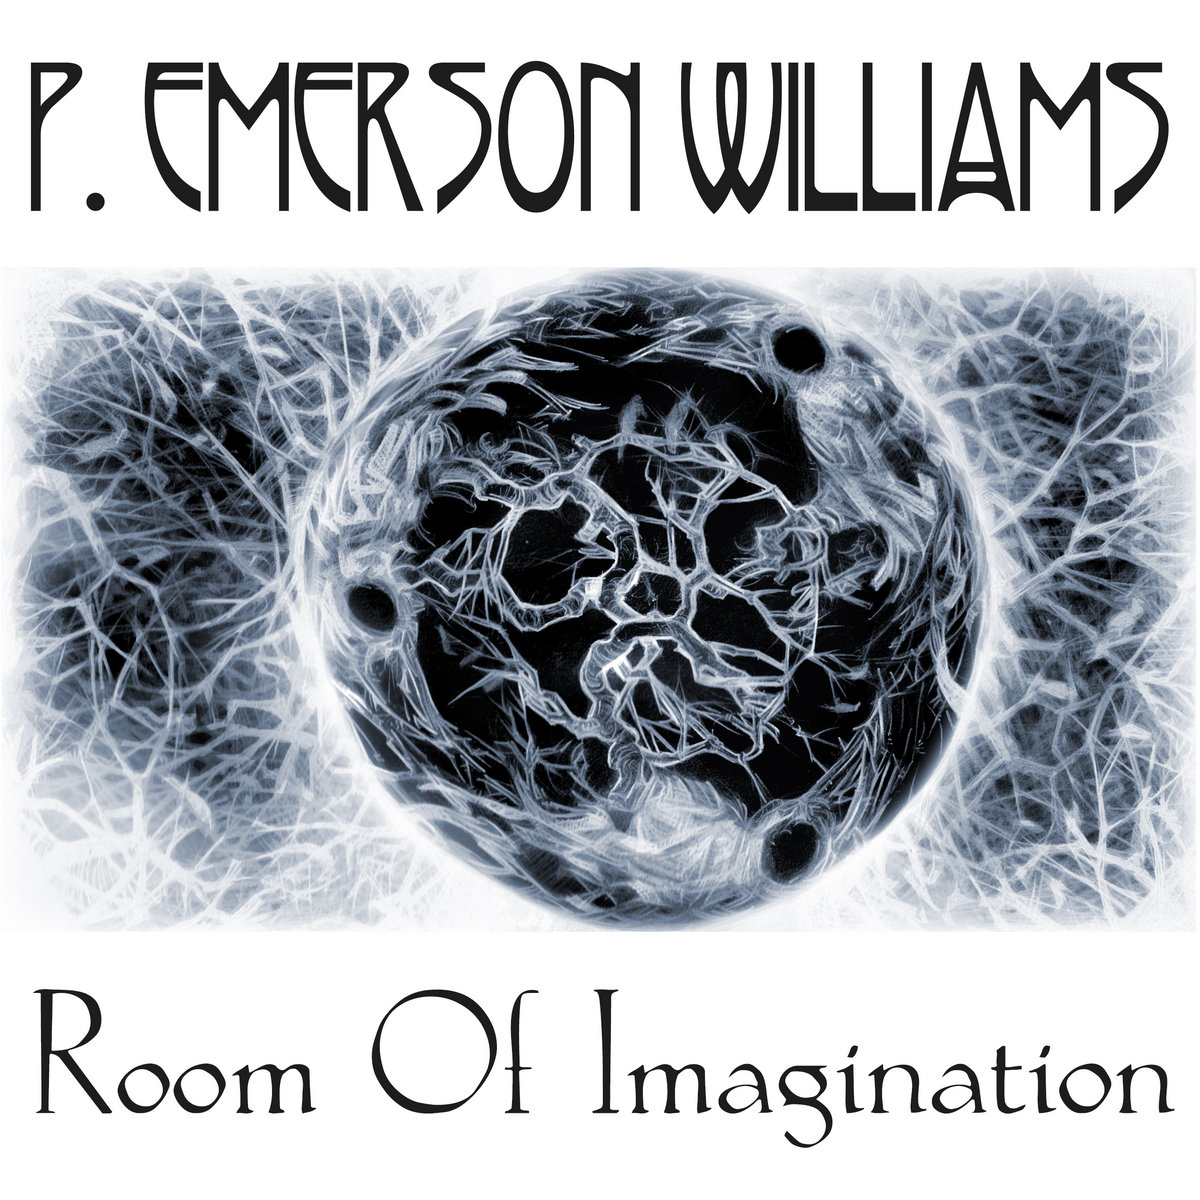 P.Emerson Williams cover